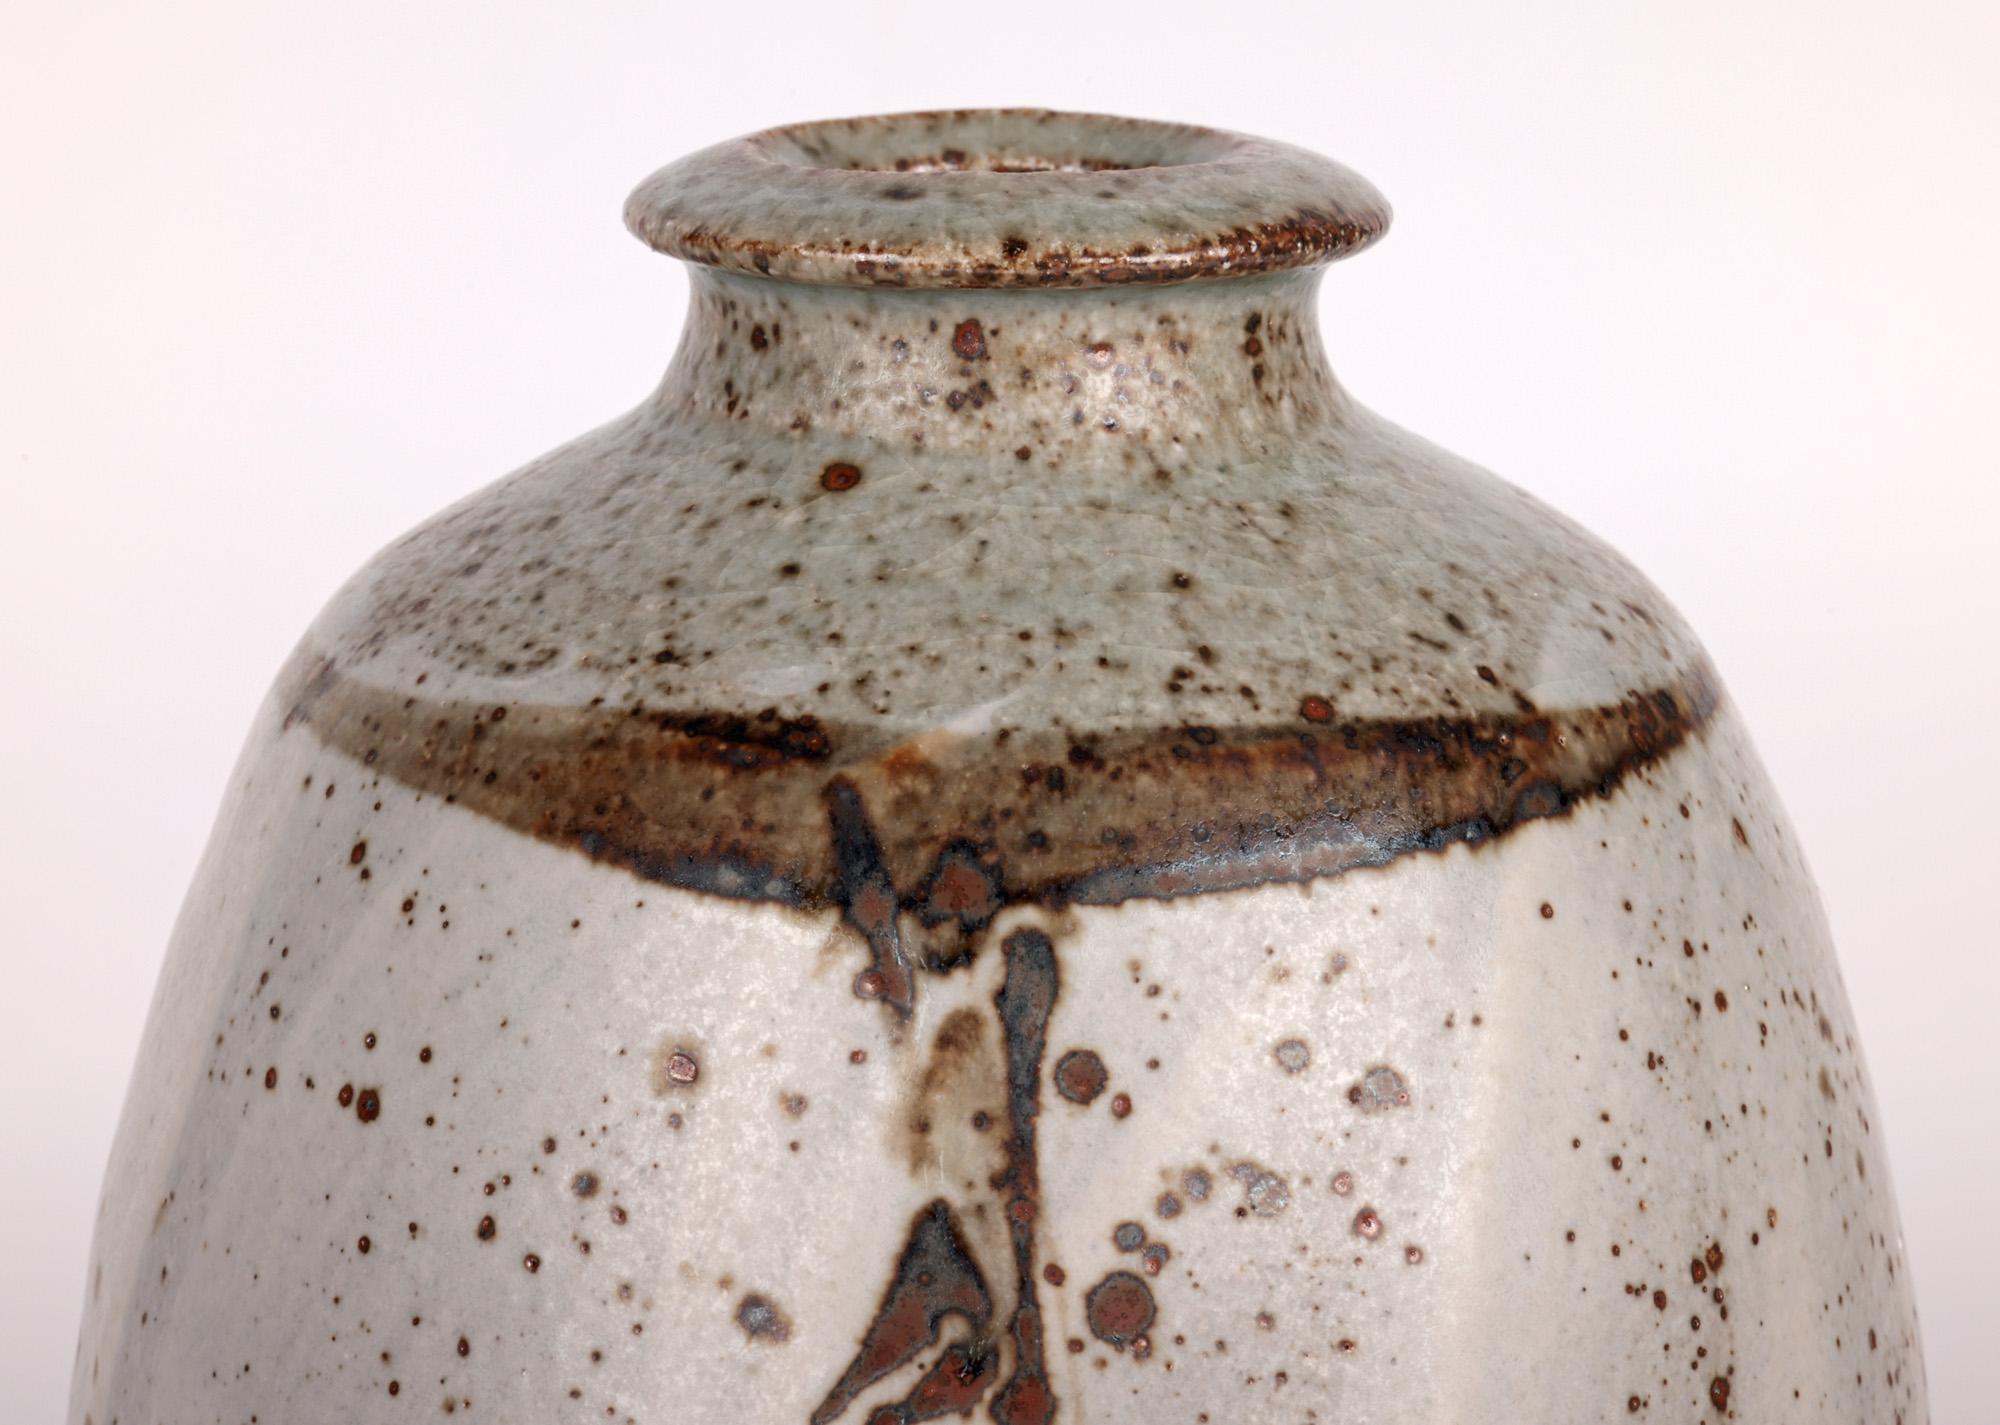 Un élégant vase de studio en grès émaillé cendré de Marston Pottery, décoré de motifs foliacés par le célèbre potier Philip (Phil) Rogers (britannique, né en 1951), datant de la fin du 20e siècle. Le vase fortement empoté repose sur un étroit pied